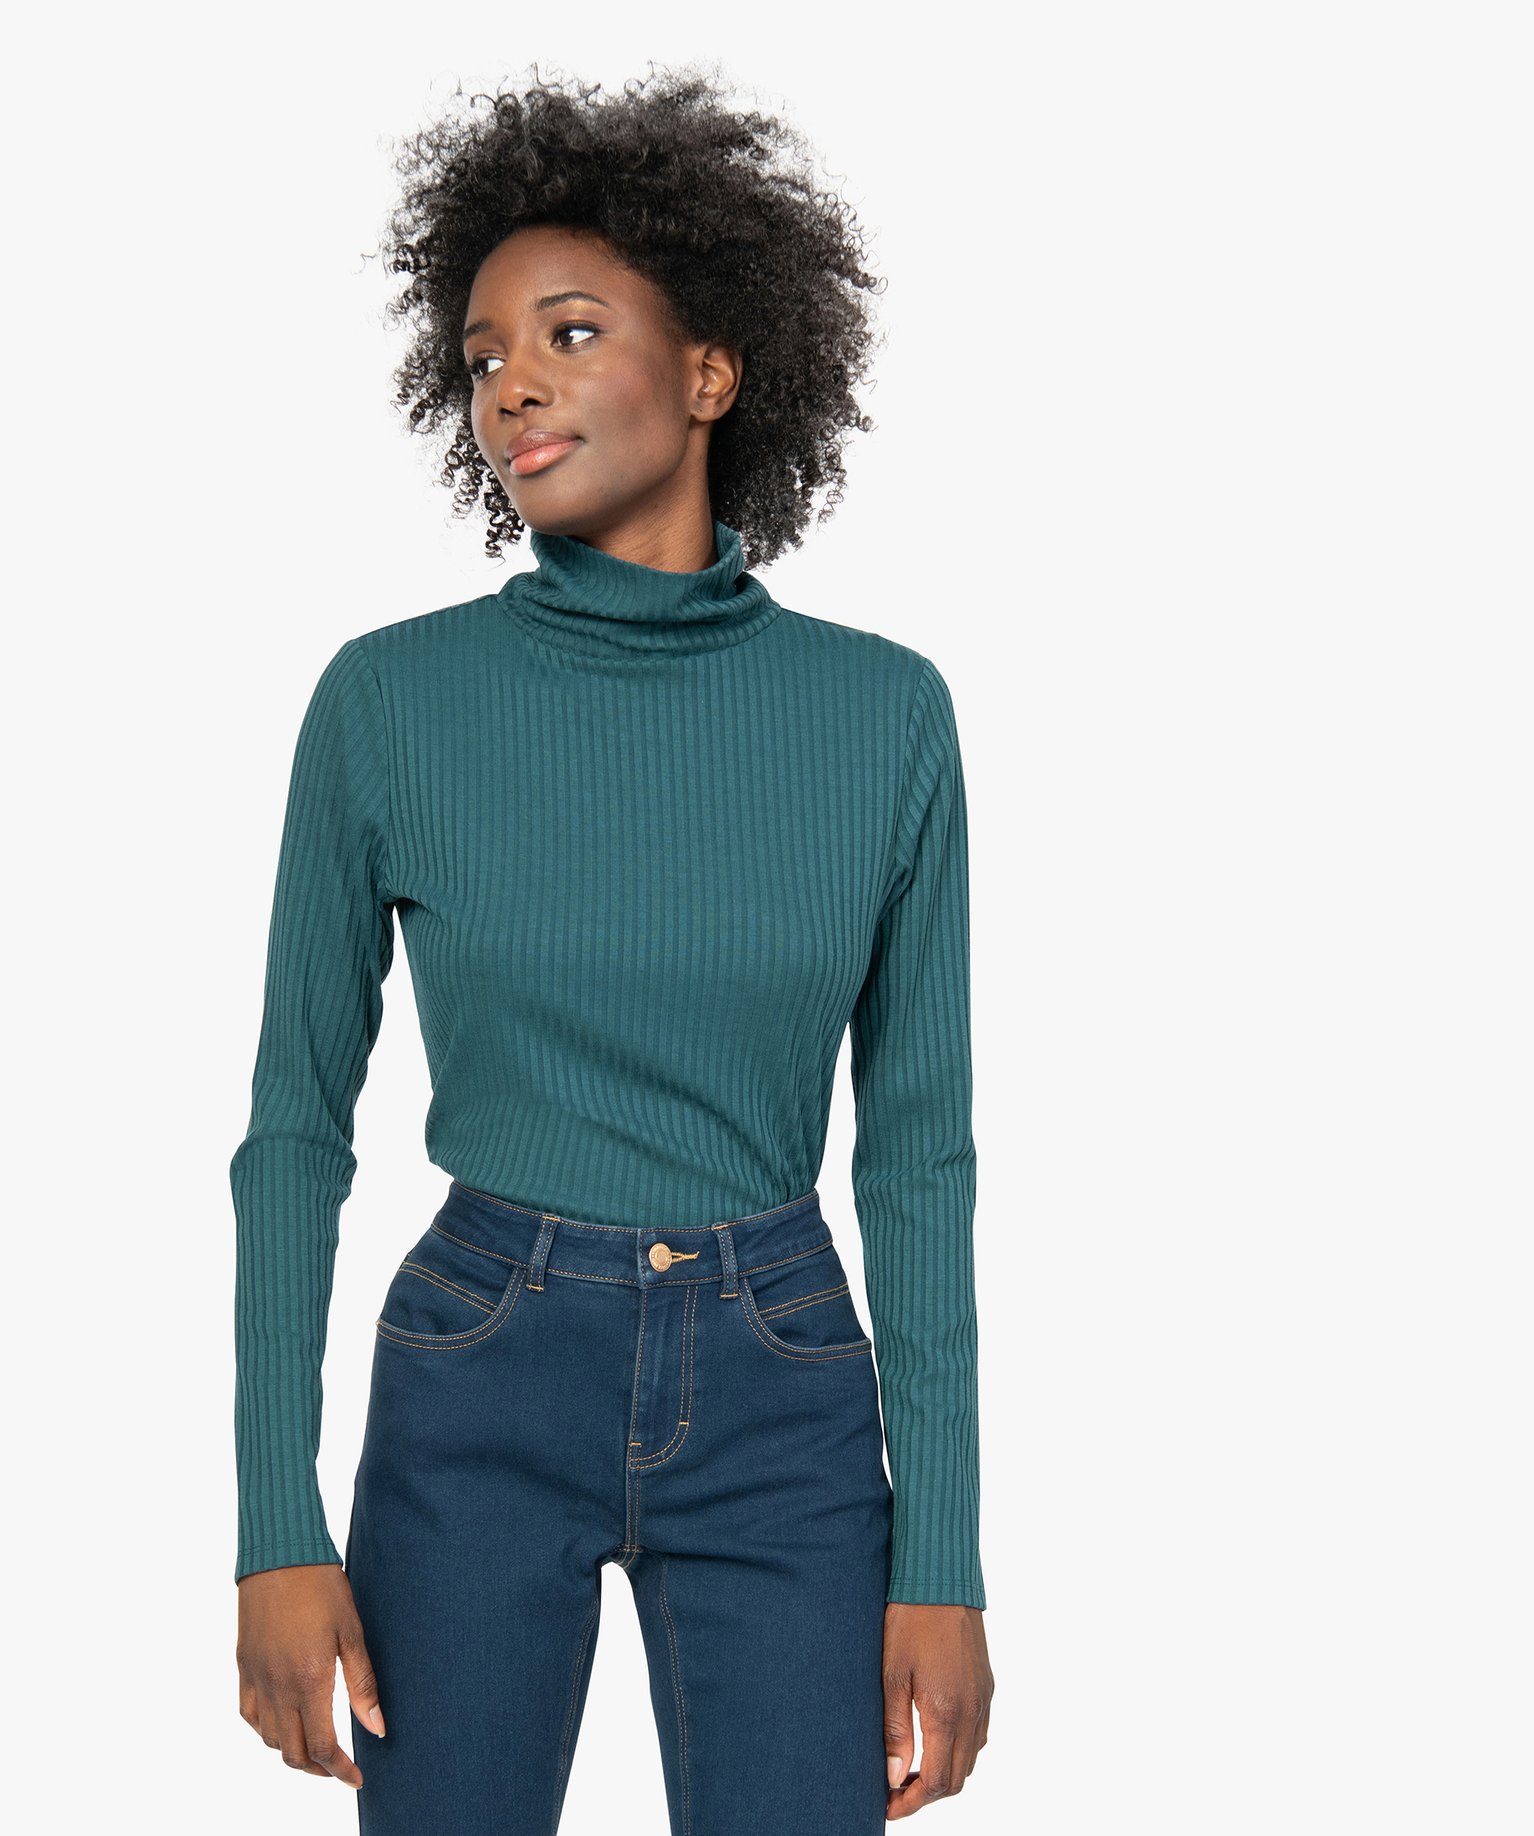 tee-shirt femme en maille cotelee manches longues et col montant vert t-shirts manches longues